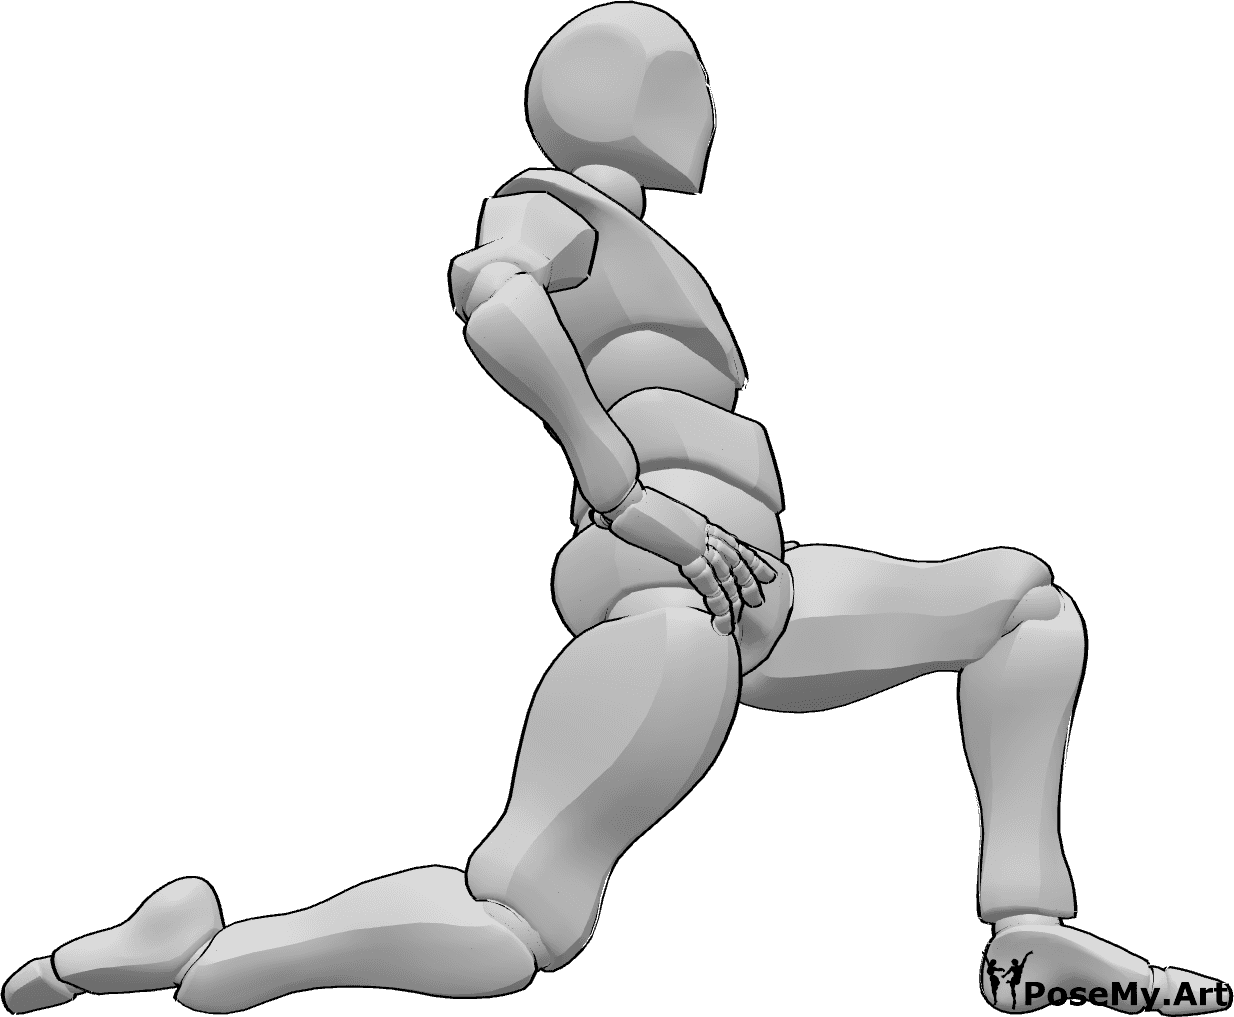 Référence des poses- Pose d'étirement à genoux - L'homme est agenouillé, les mains sur les hanches, étirant son tronc et ses jambes.